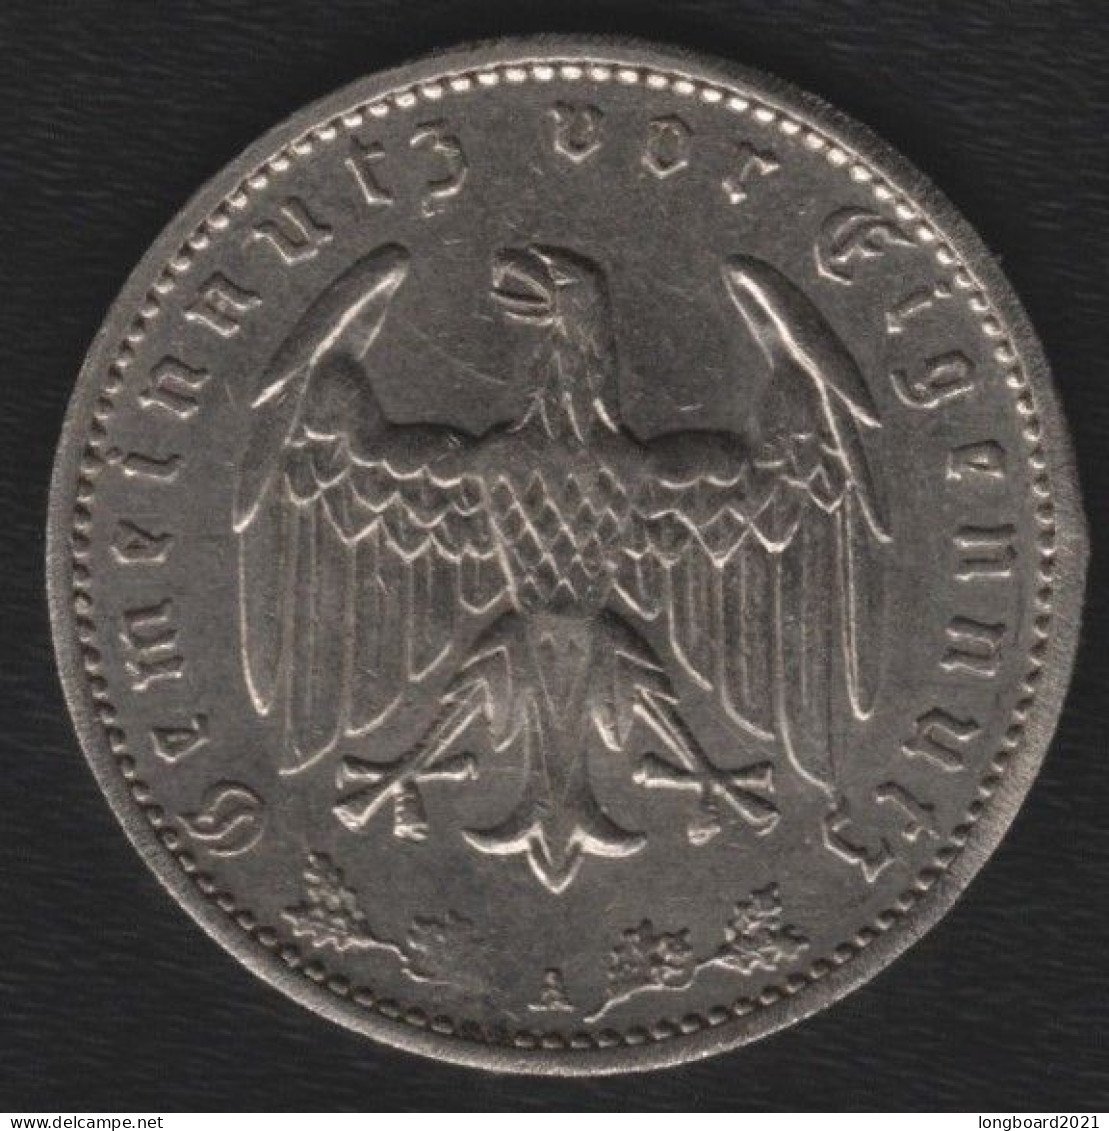 DEUTSCHES REICH - 1 REICHSMARK 1935A - 1 Mark & 1 Reichsmark